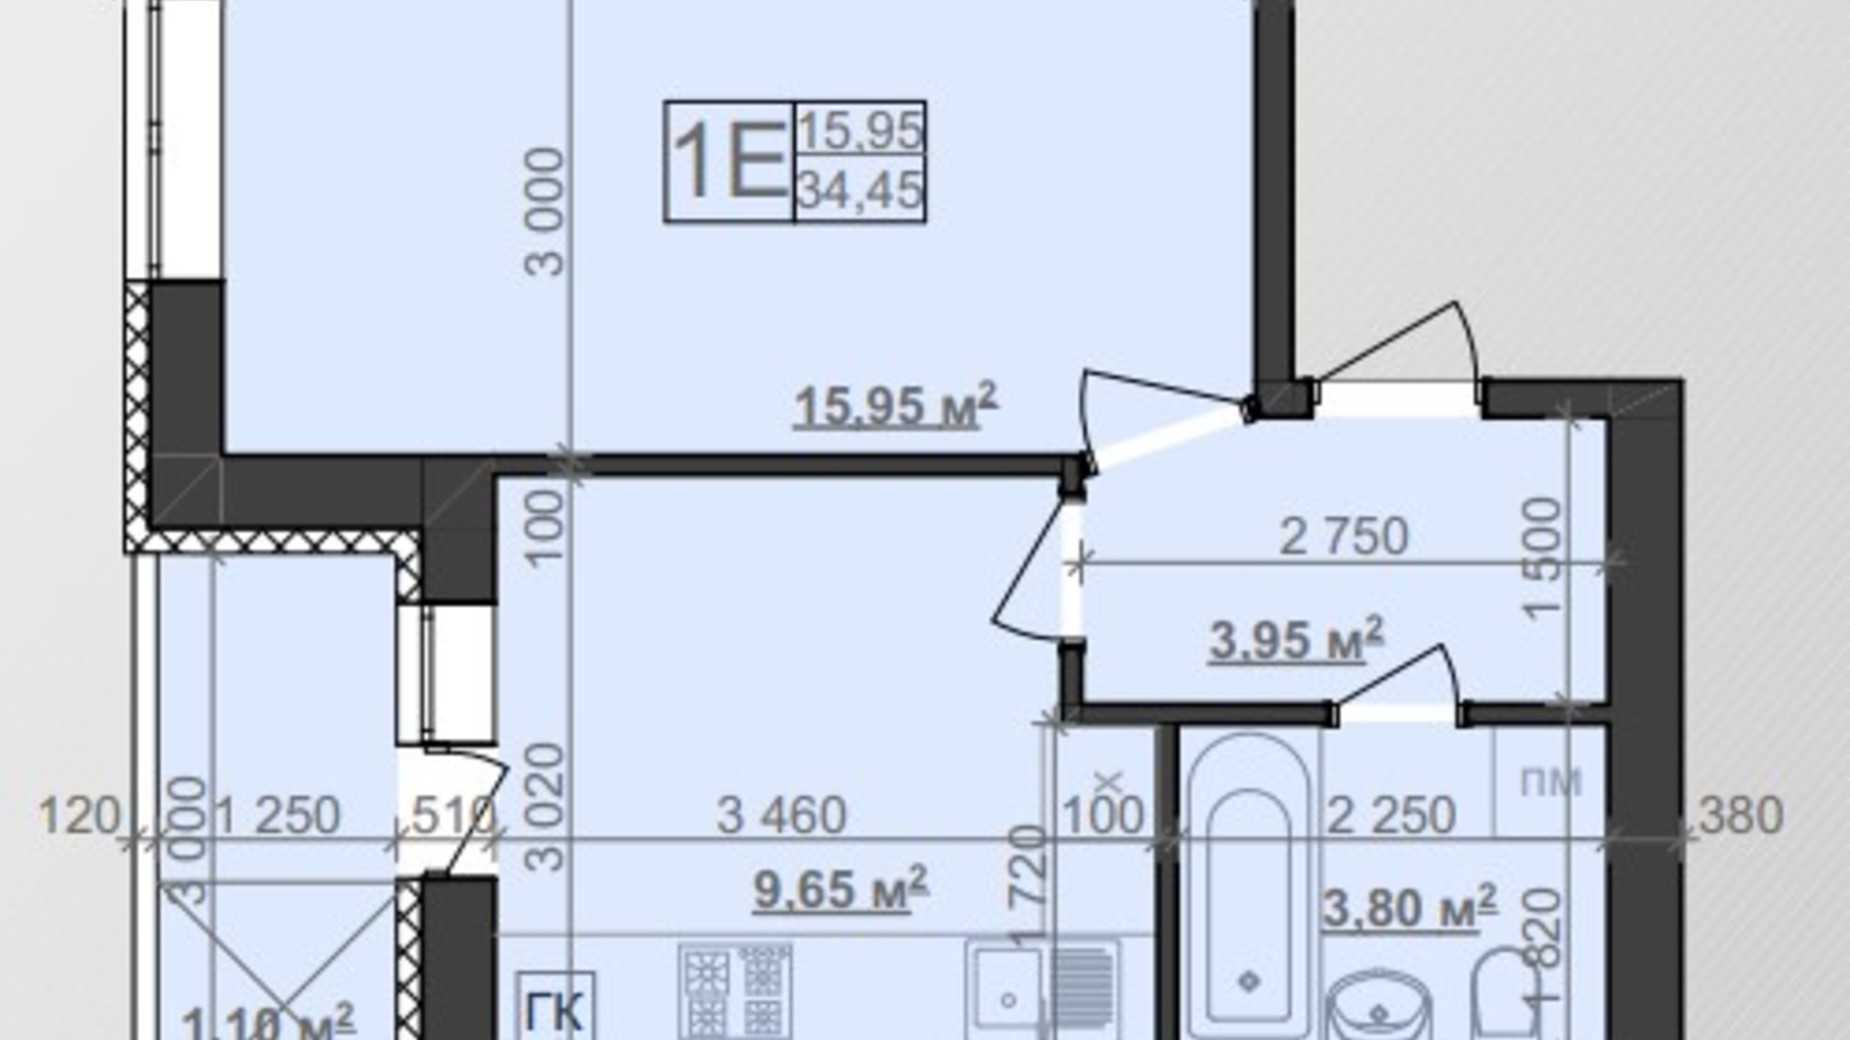 Планировка 1-комнатной квартиры в ЖК Заря 34.45 м², фото 340637